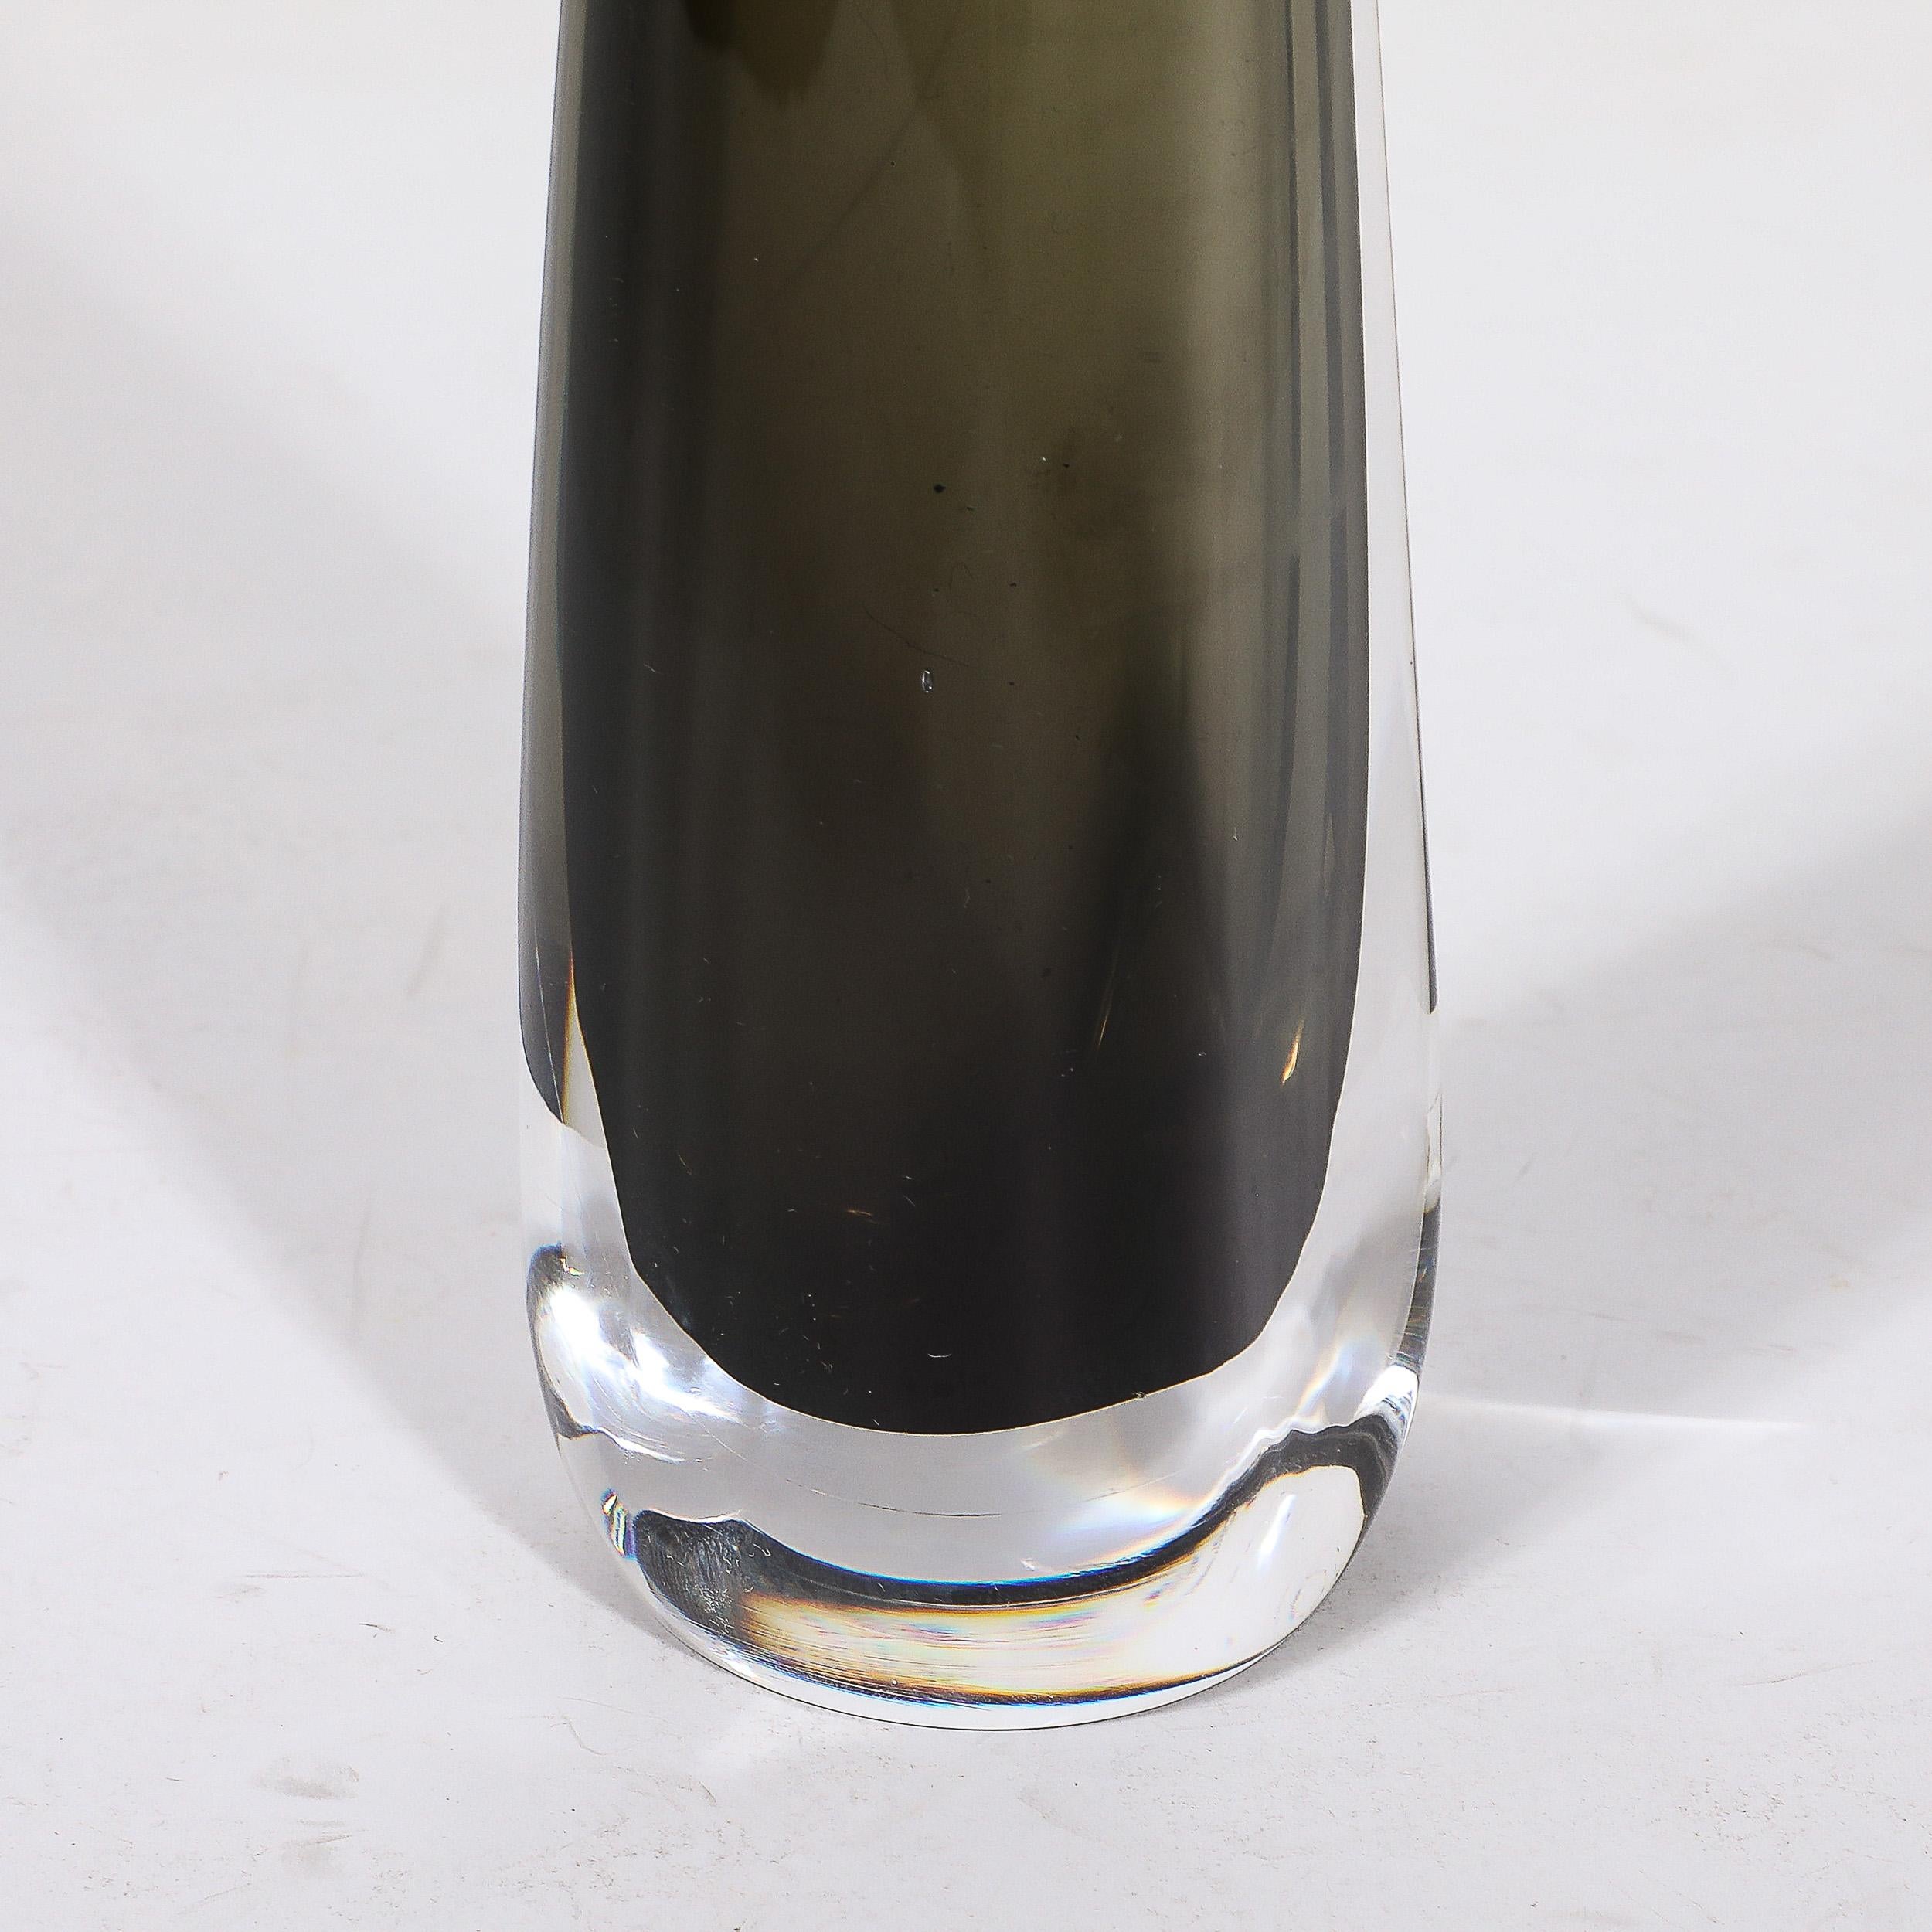 Blown Glass Mid-Century Modernist Slender Smoked Glass Vase by Nils Landberg for Orrefors For Sale